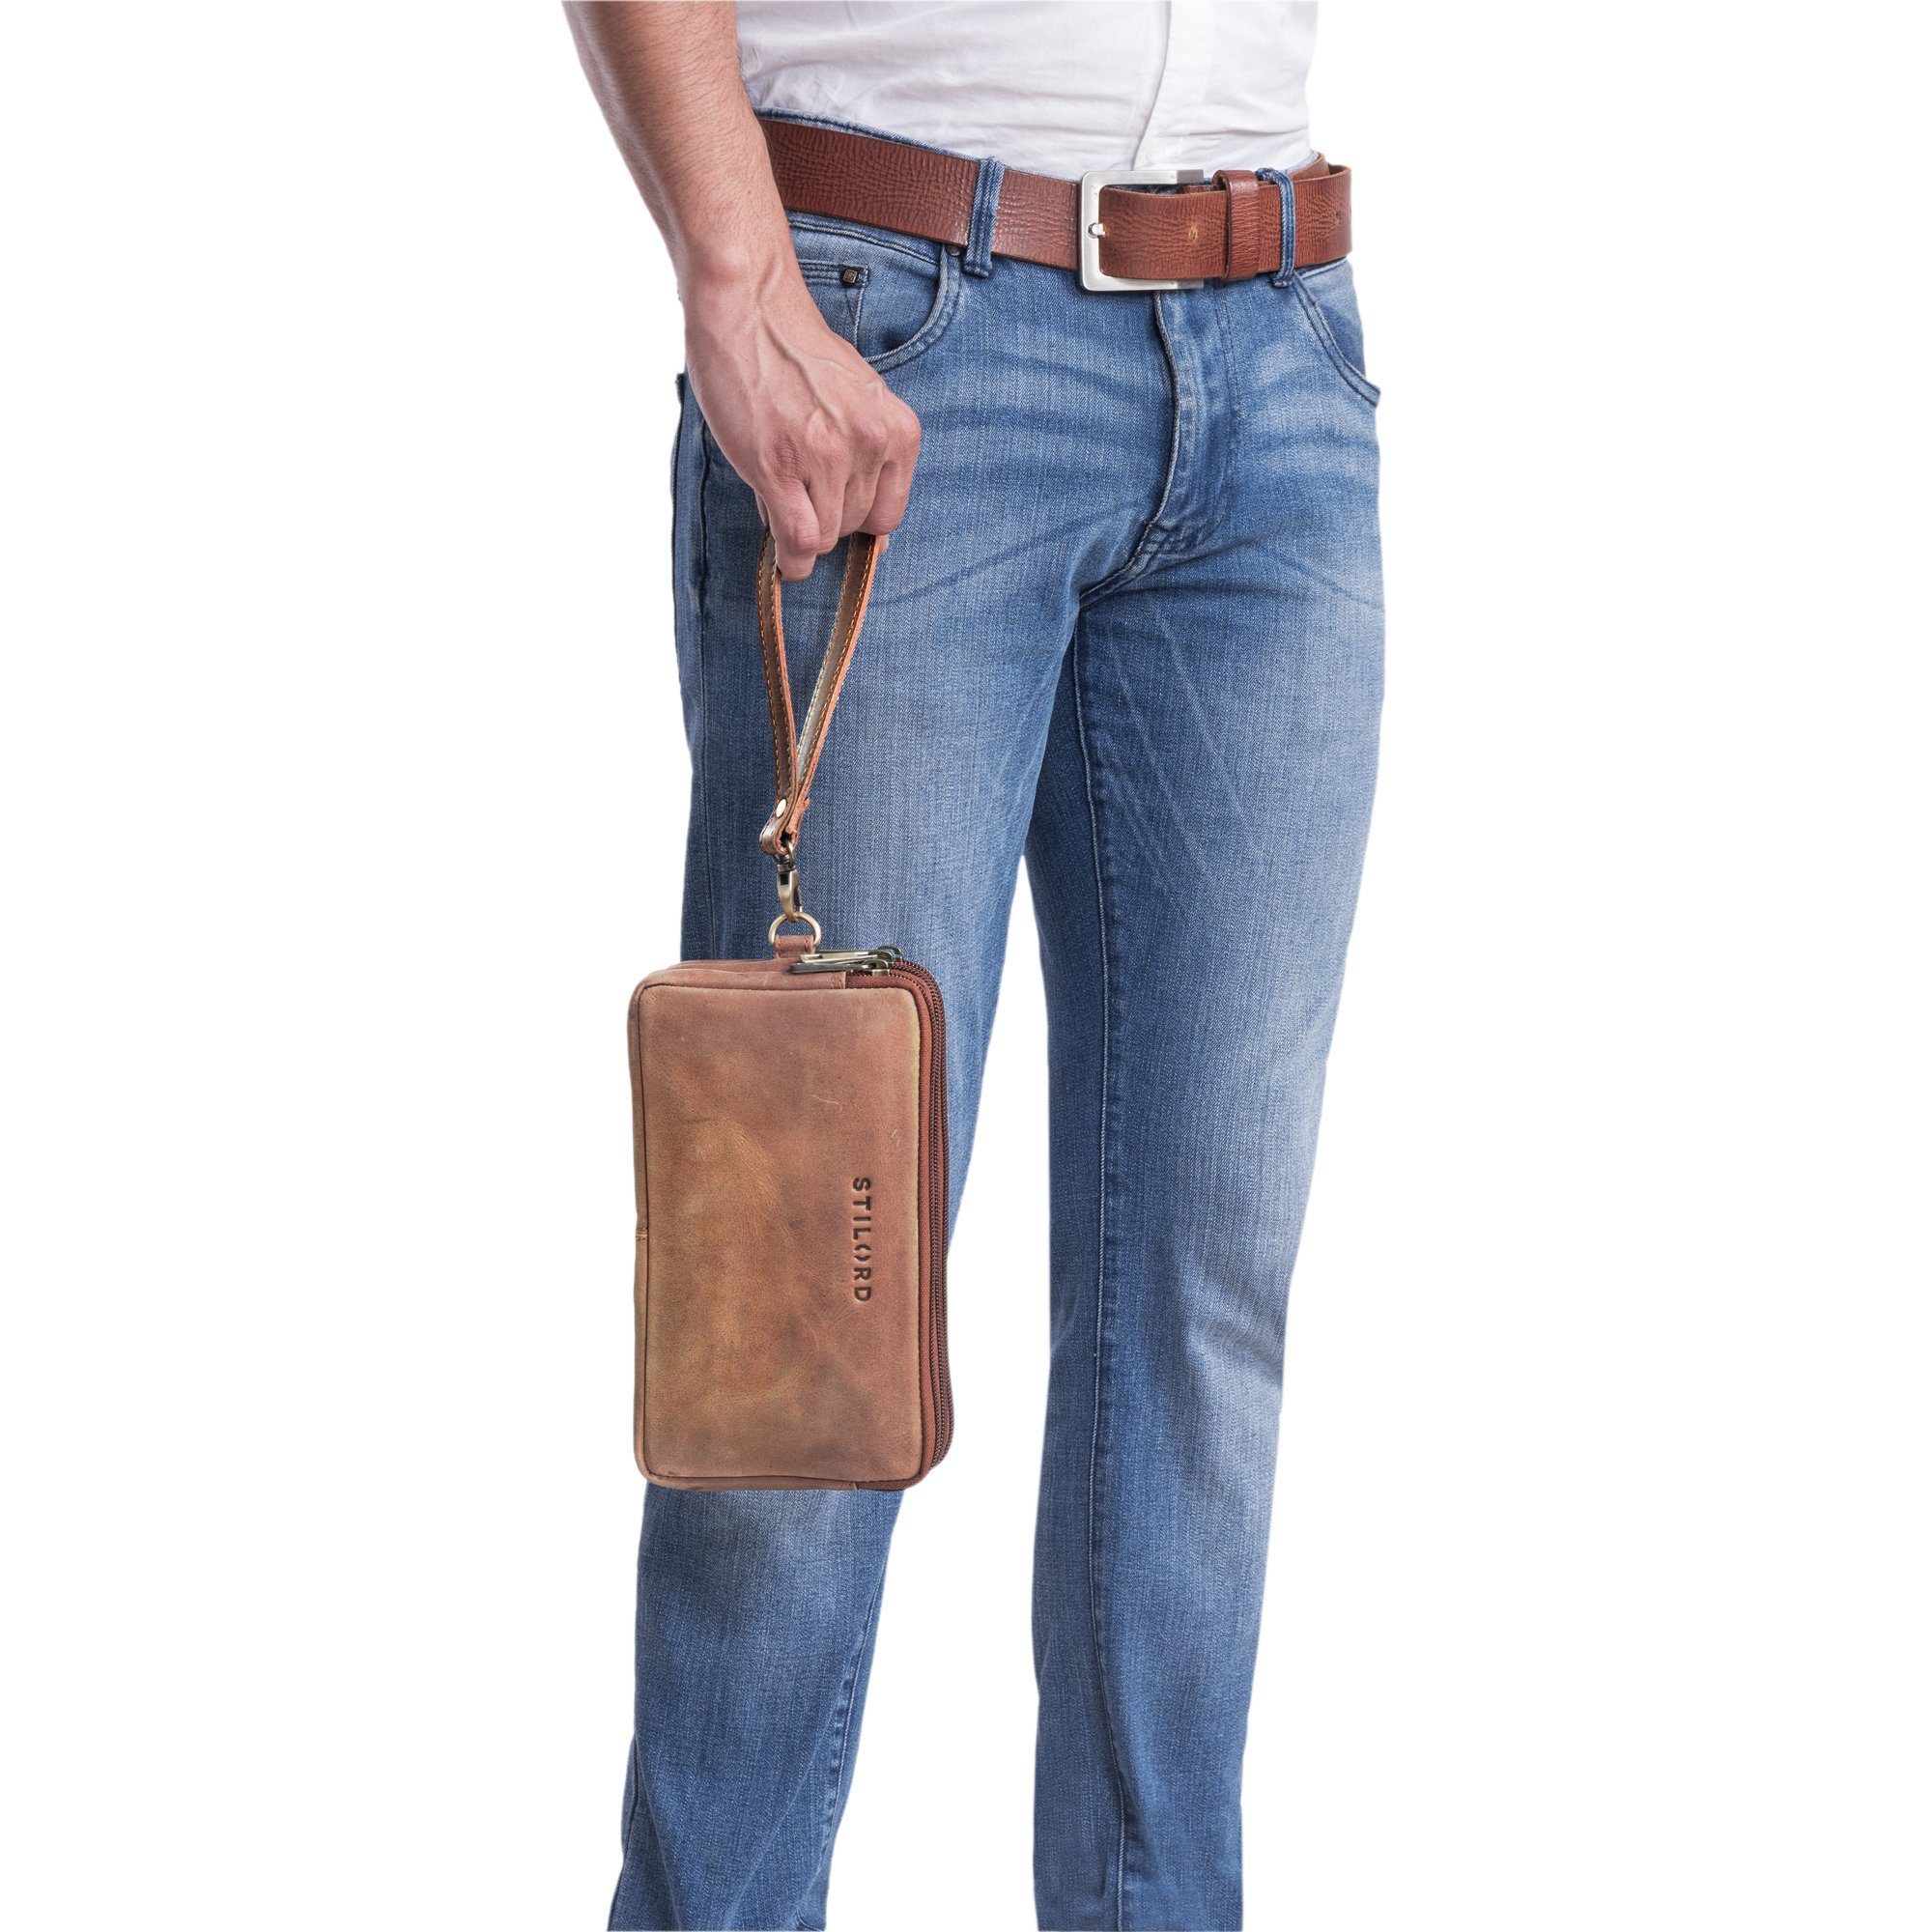 STILORD Messenger Bag "Kenneth" messina Männerhandtasche - klein Leder braun Klassische